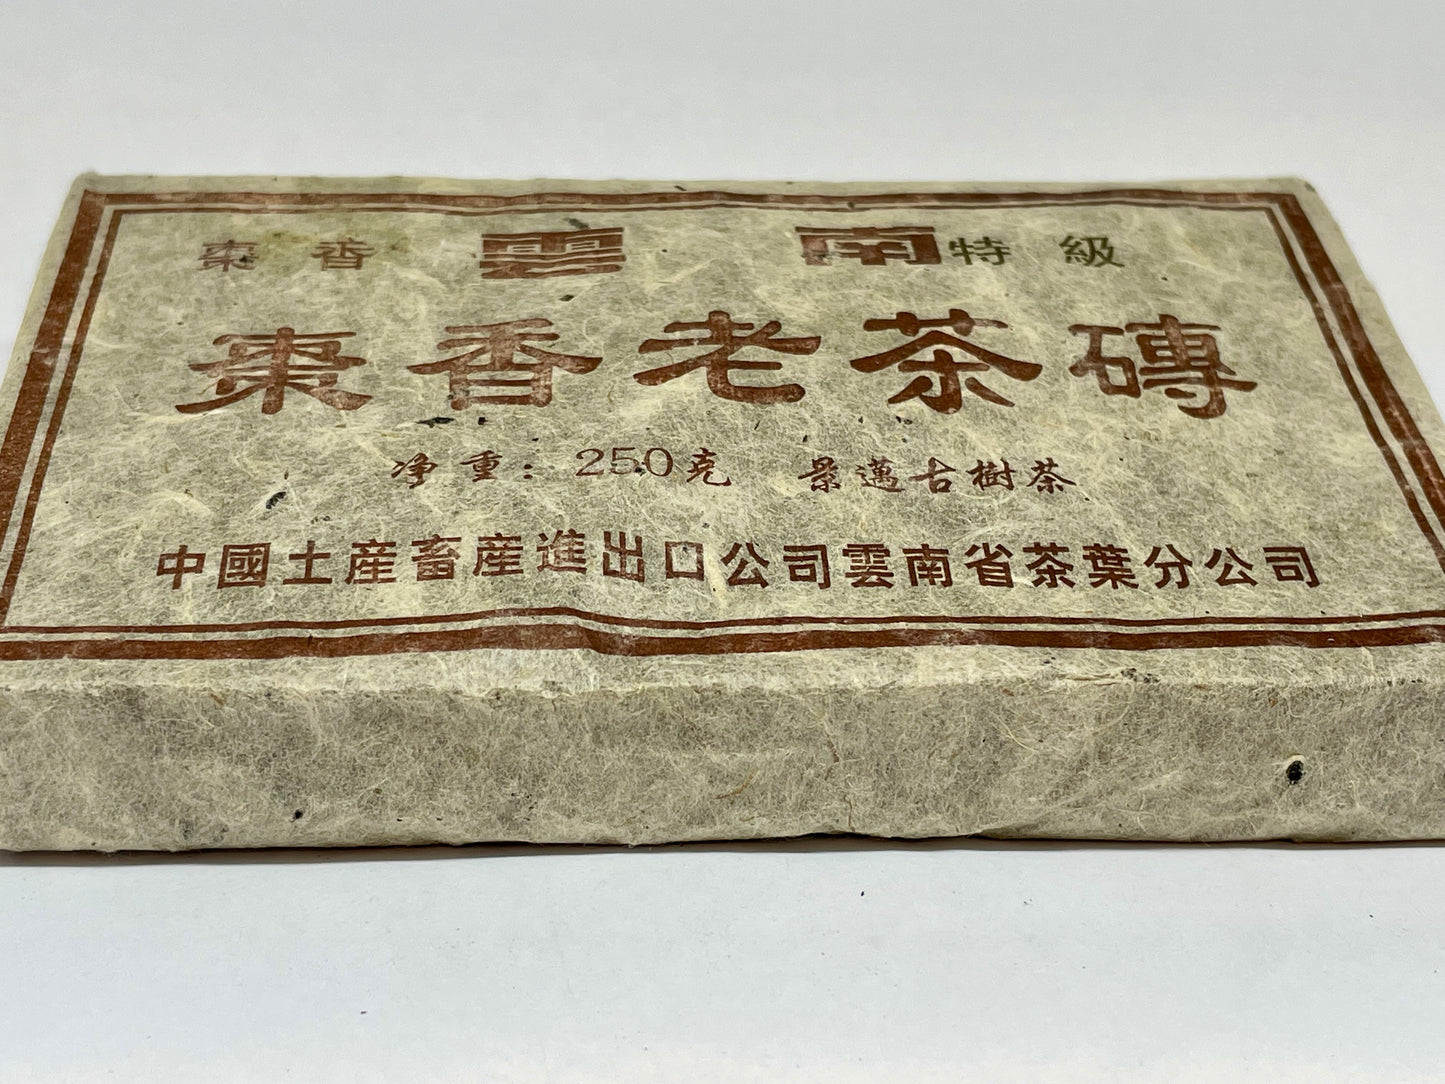 1990 Zaoxiang Old Tea Brick 250g